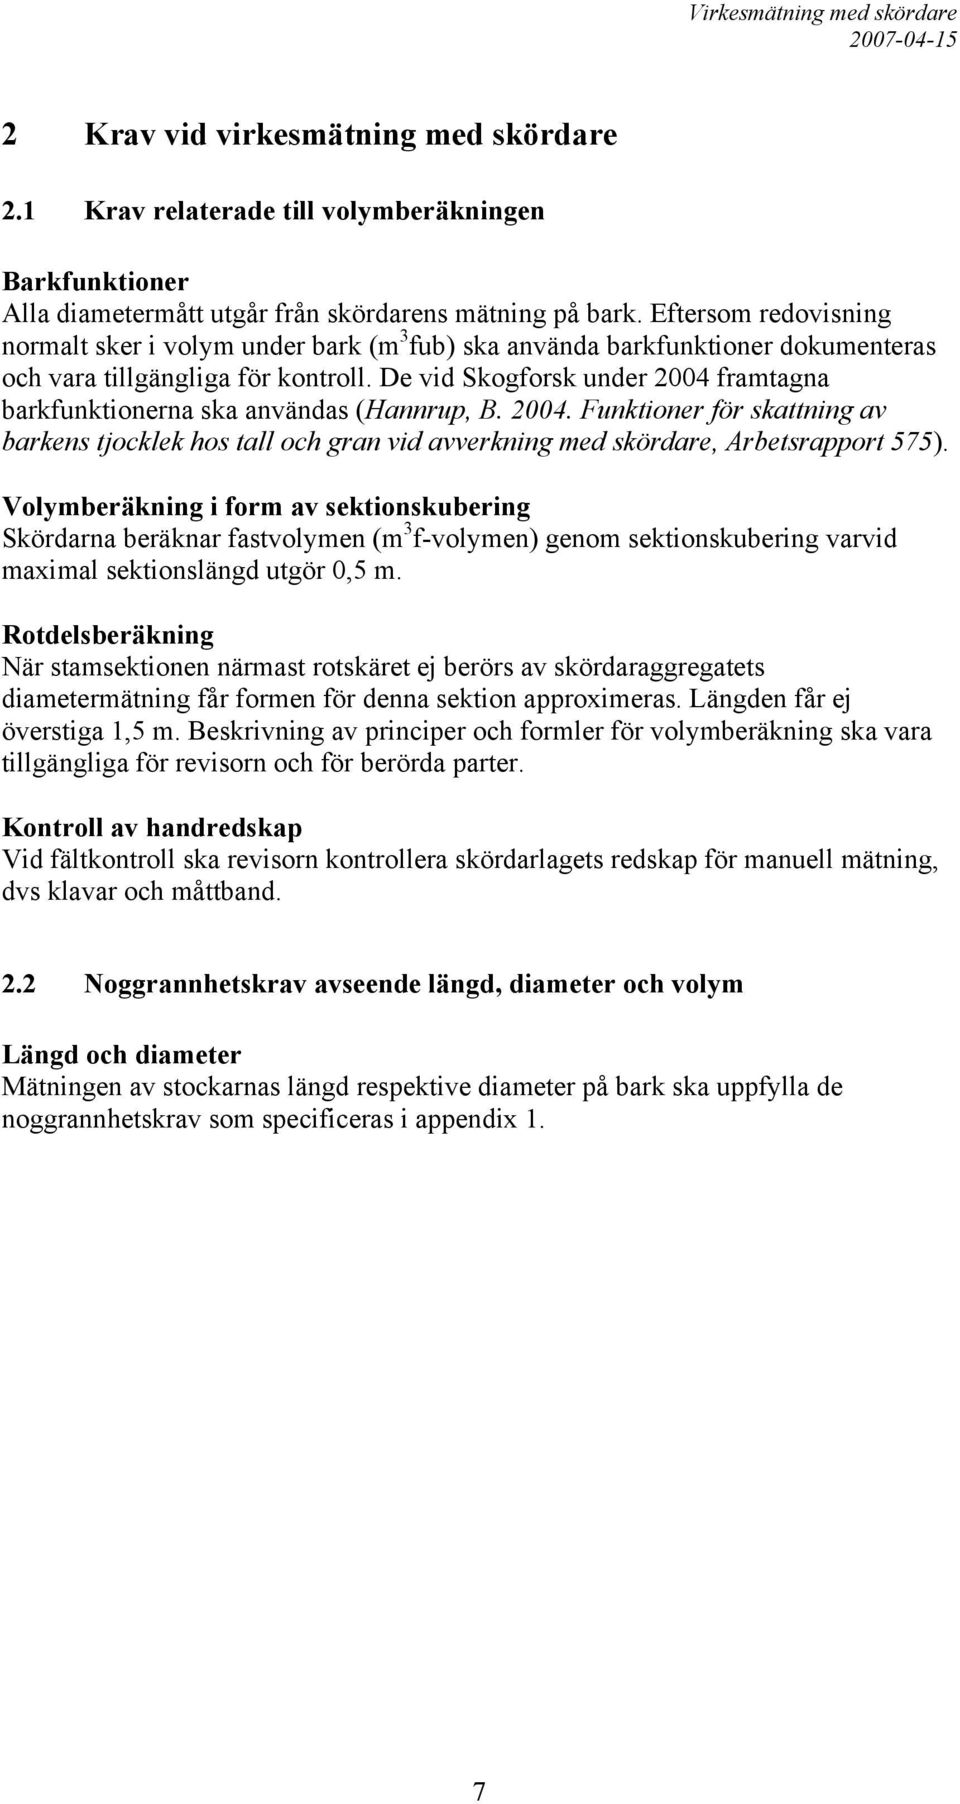 De vid Skogforsk under 2004 framtagna barkfunktionerna ska användas (Hannrup, B. 2004. Funktioner för skattning av barkens tjocklek hos tall och gran vid avverkning med skördare, Arbetsrapport 575).